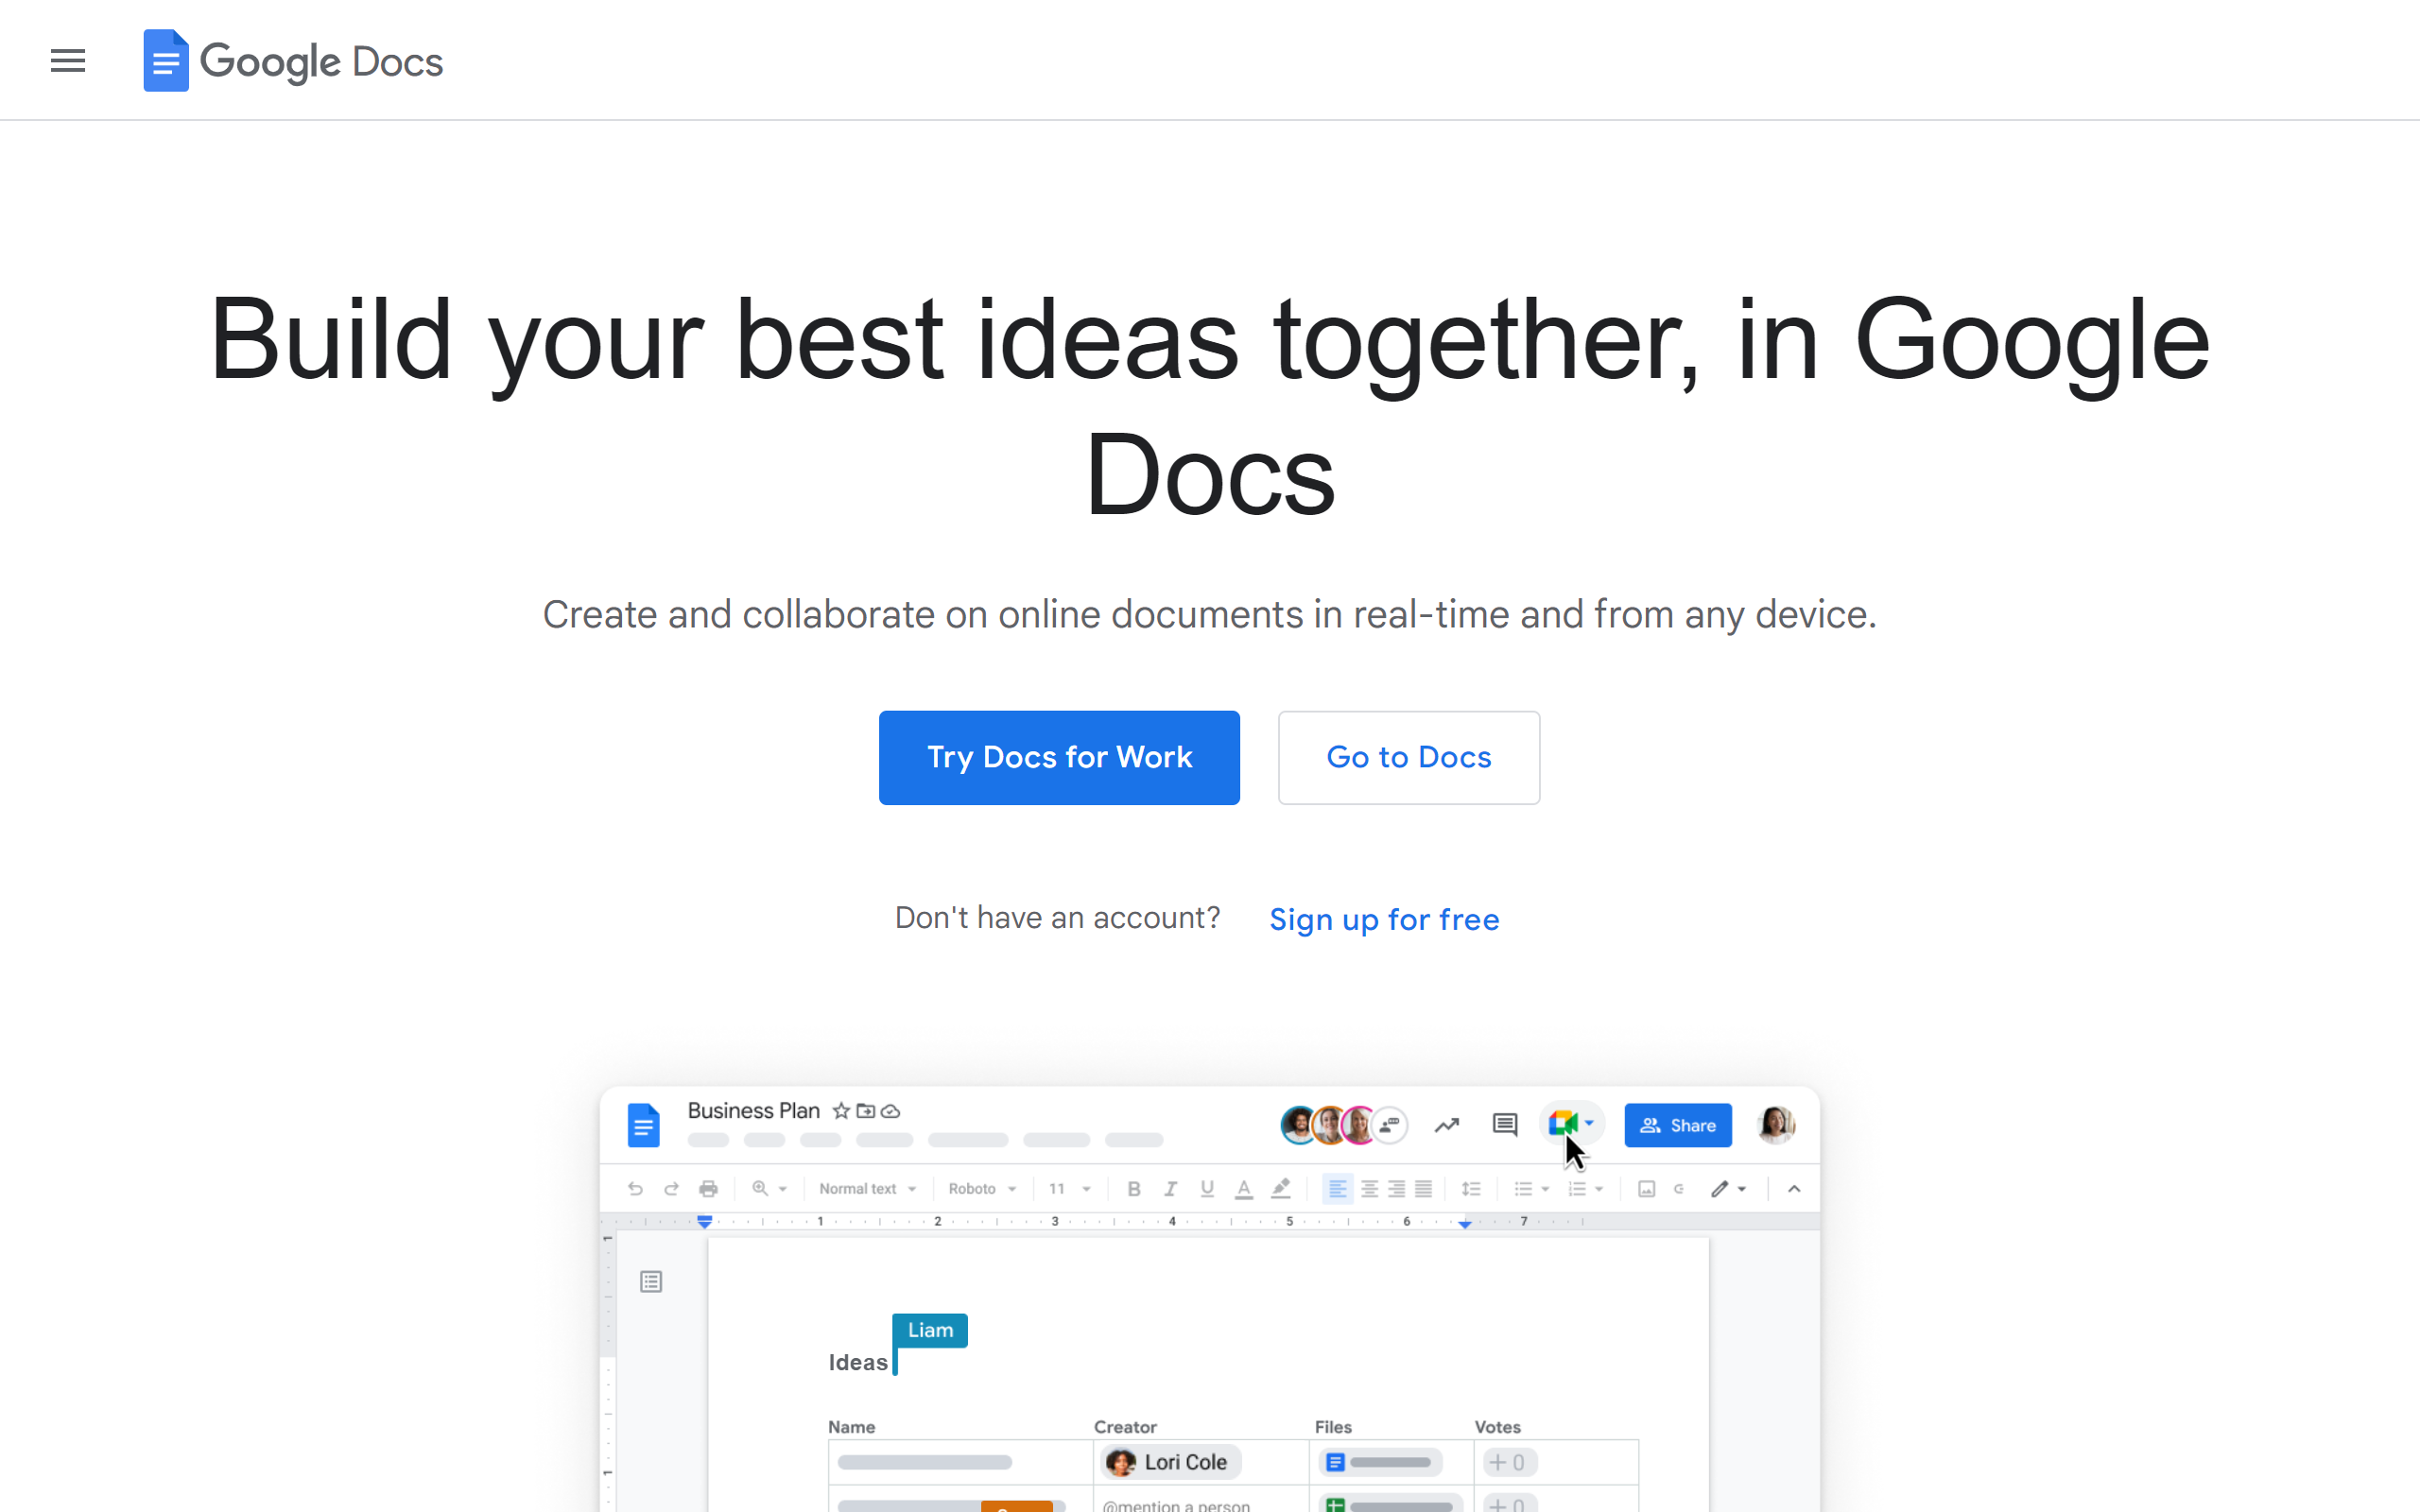 Google Docs blogging app